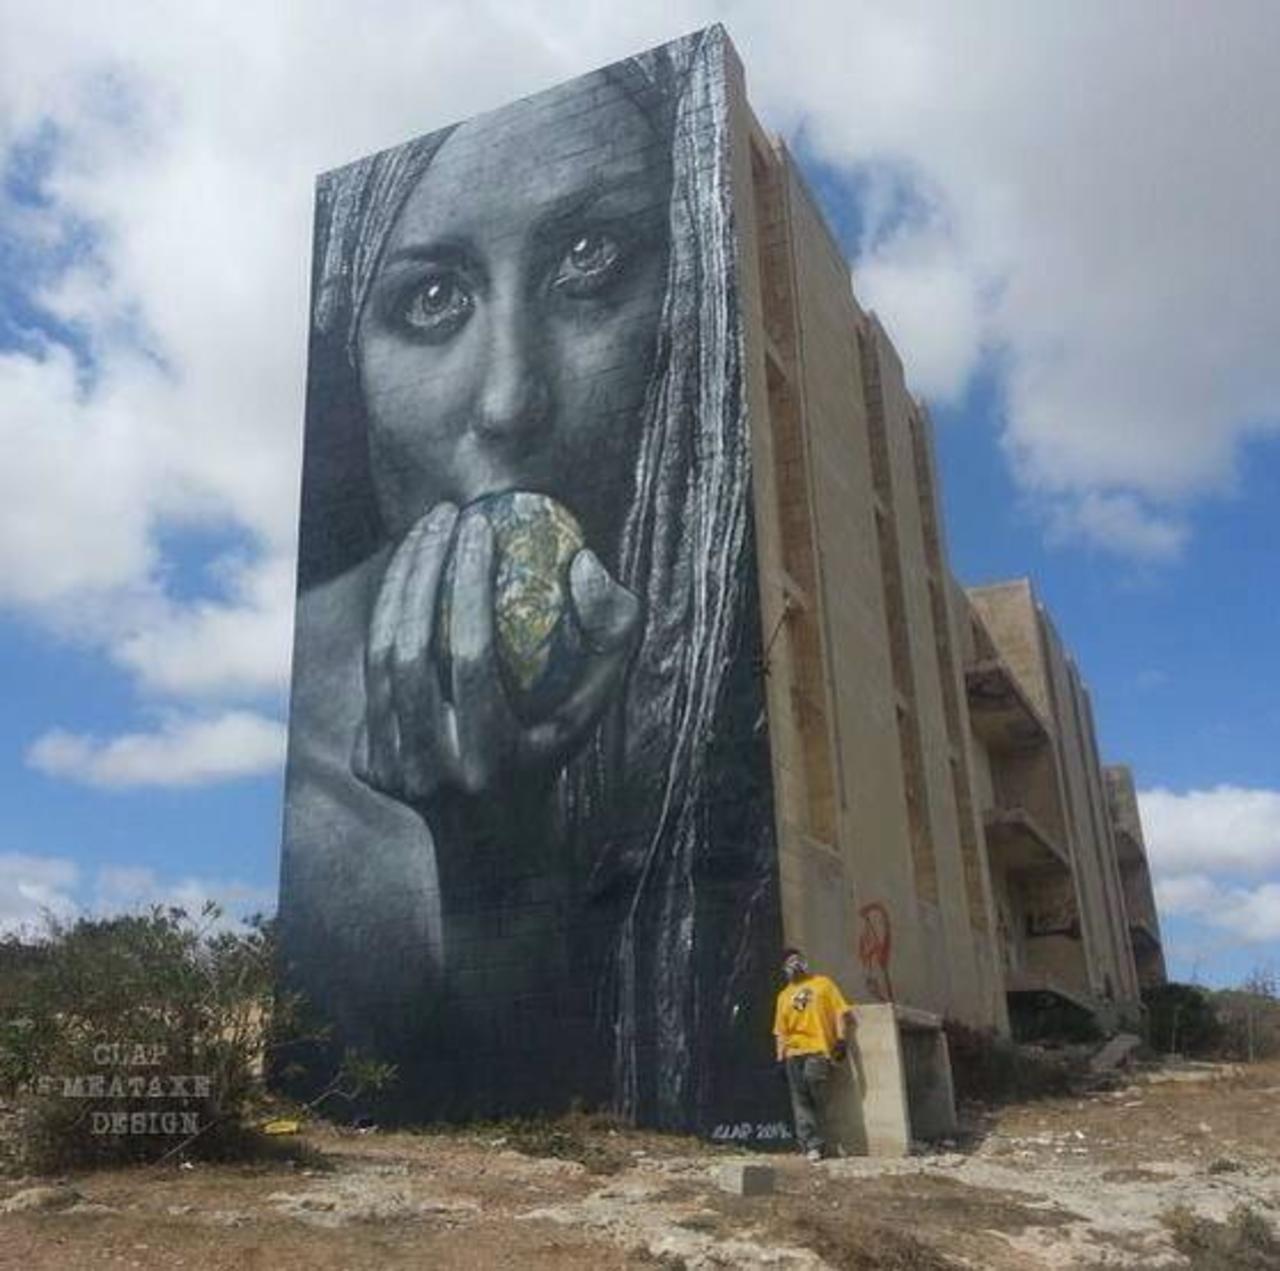 Artist Meataxe new awesome large scale Street Art mural in Malta #art #graffiti #mural #streetart http://t.co/E6z9GtPfe3